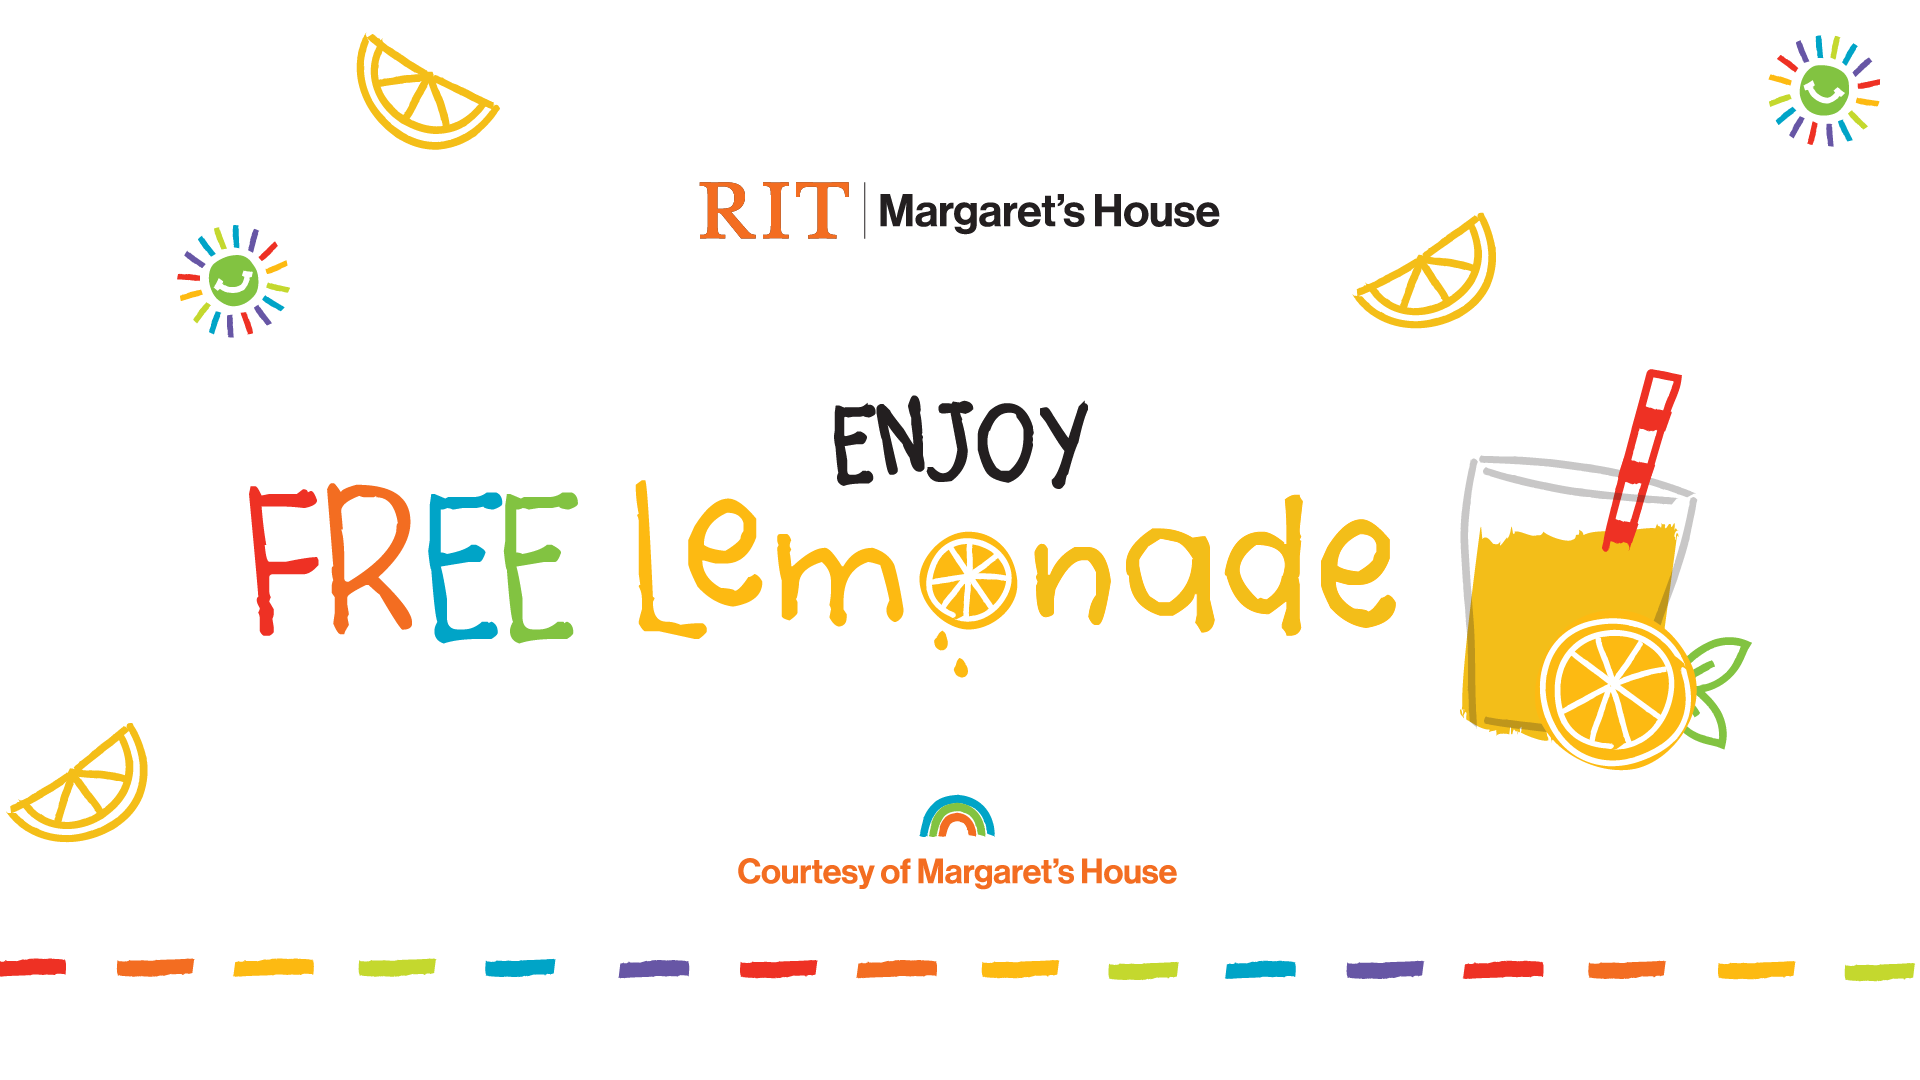 Enjoy Free Lemonade, courtesy of Margaret's House